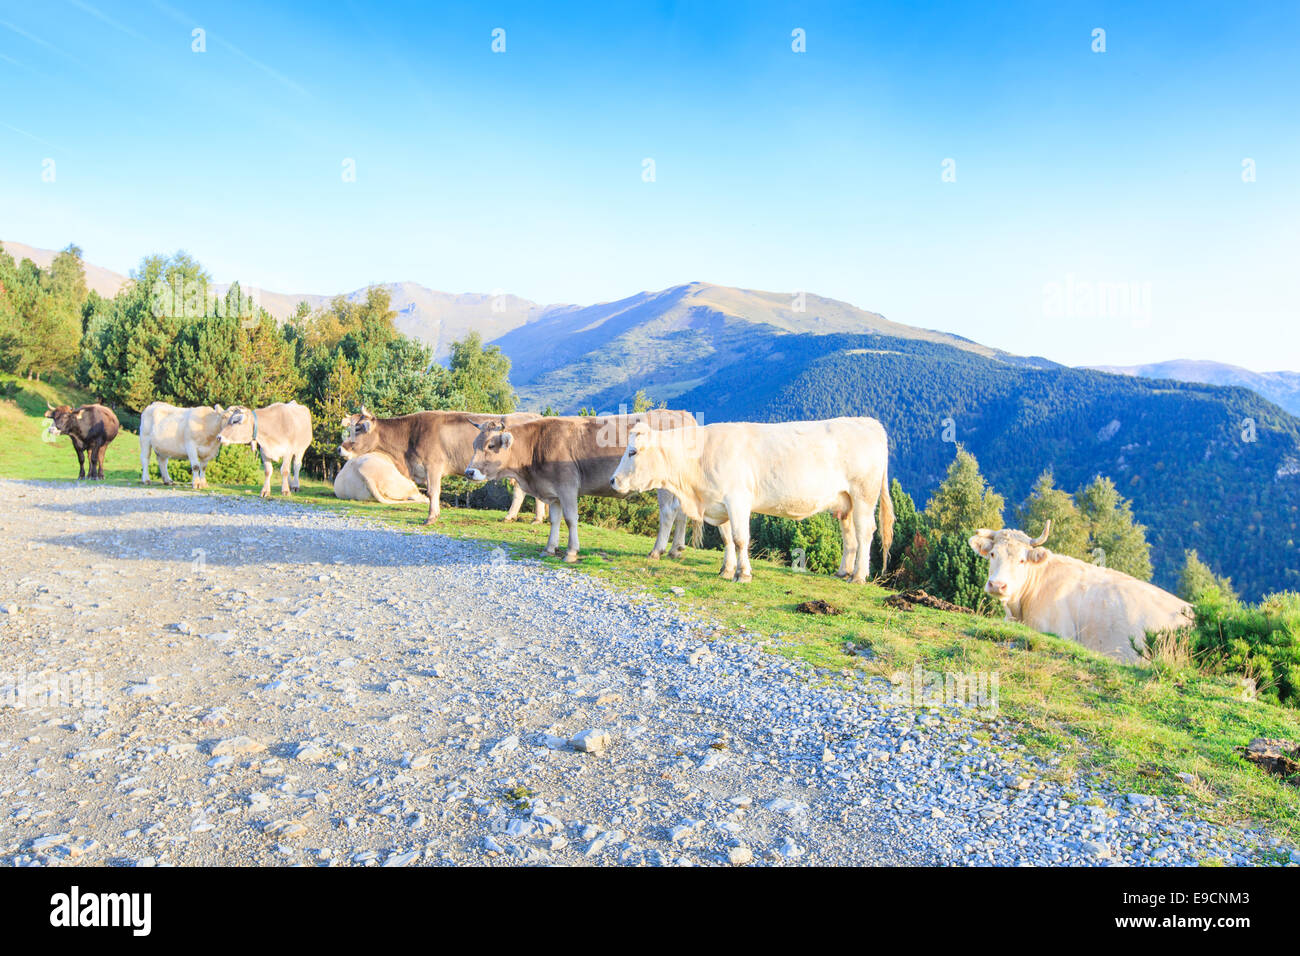 Un troupeau de vaches marron et blanc dans les Pyrénées espagnoles et marcher le long d'un chemin de terre à flanc de montagne Banque D'Images